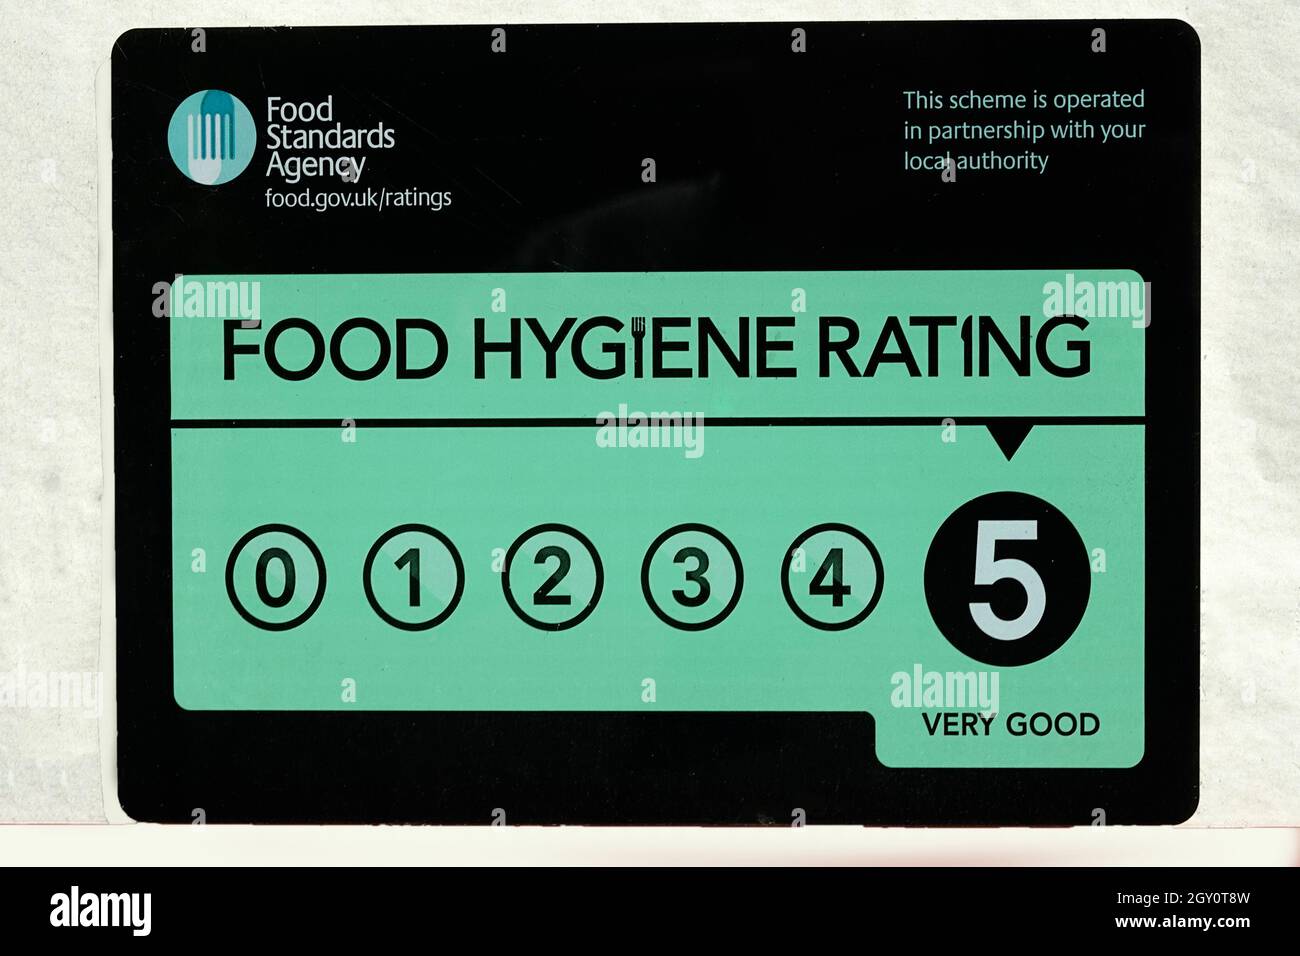 Food Standards Agency Food Hygiene Rating Scheme FHRS un adesivo vetrina caffè dato cinque 5 stelle molto buona valutazione in relazione al cibo e la salute pubblica UK Foto Stock